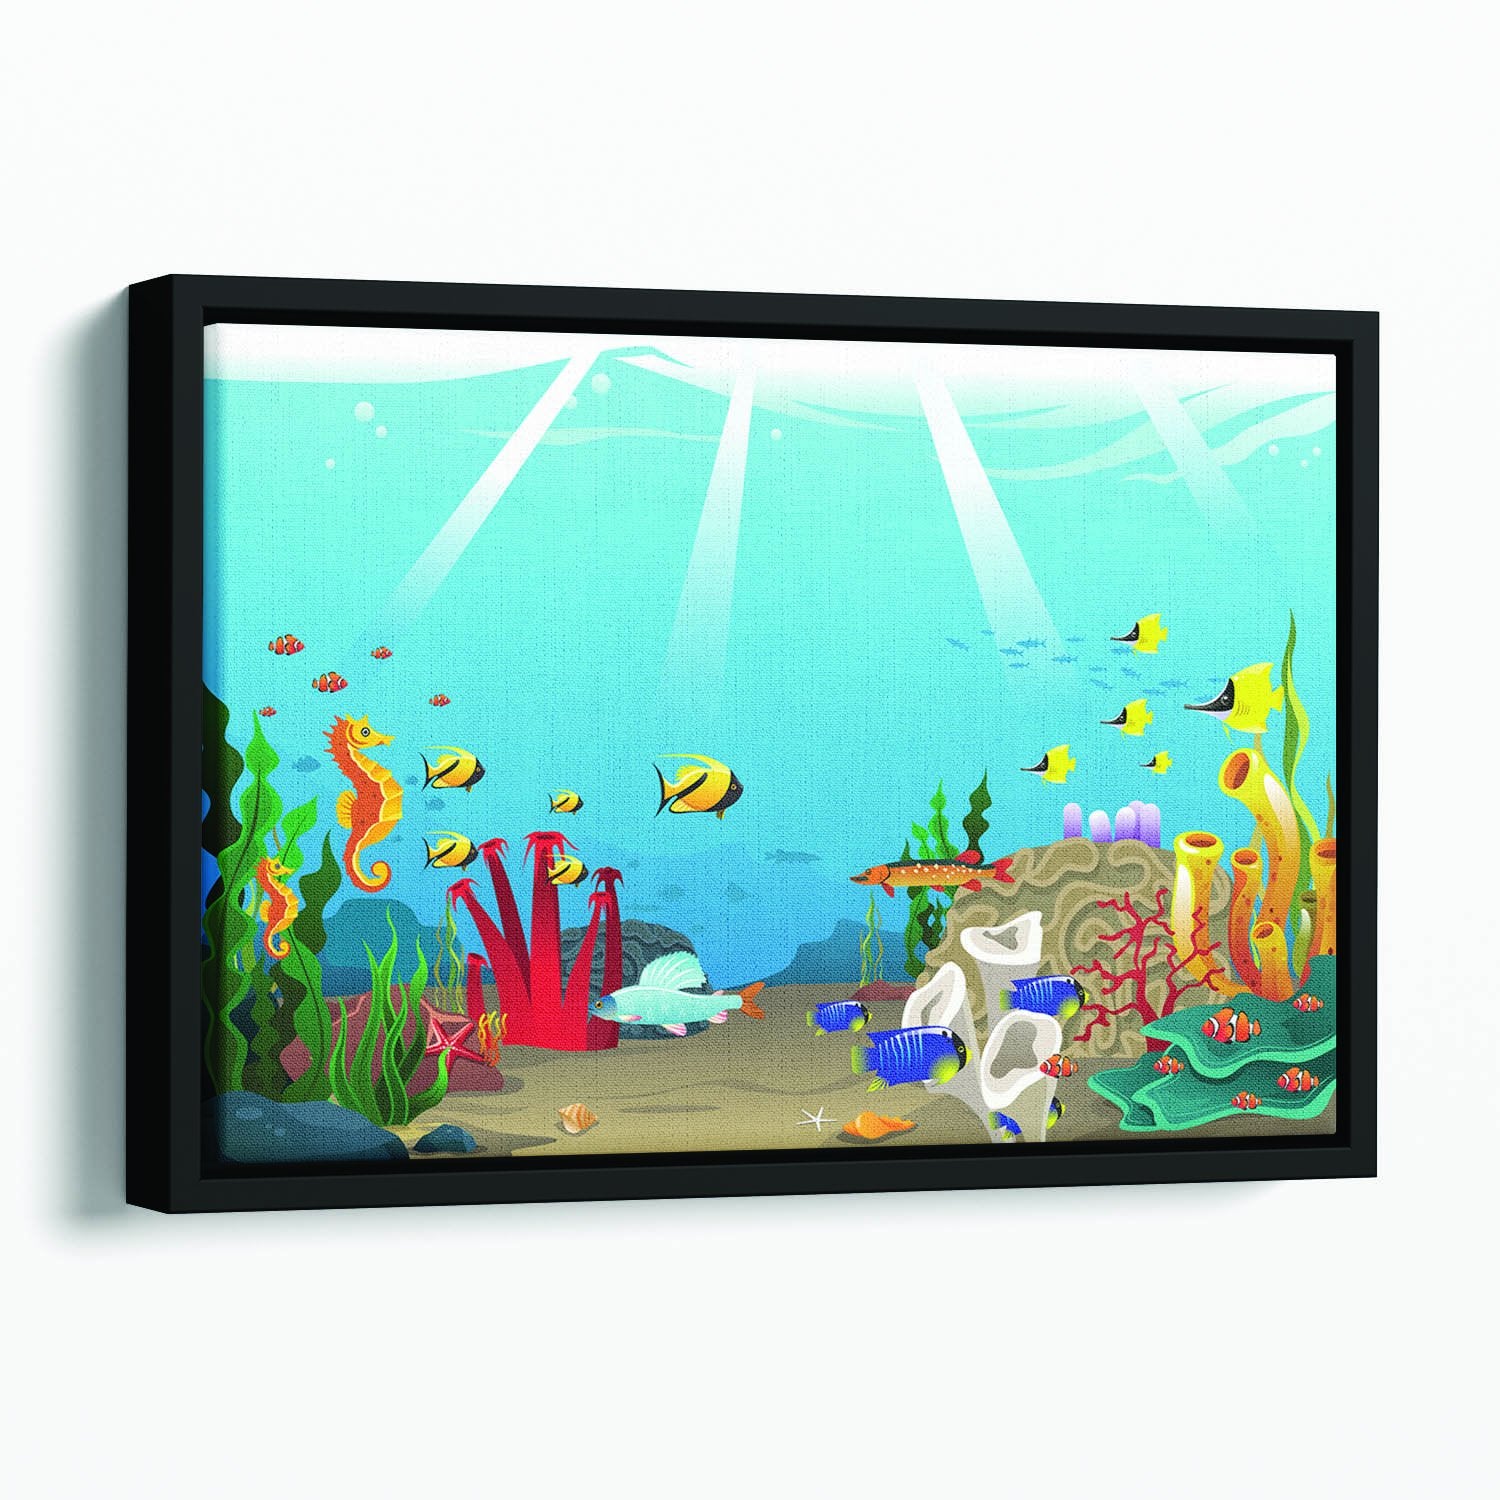 Illustration of marine life design Floating Framed Canvas